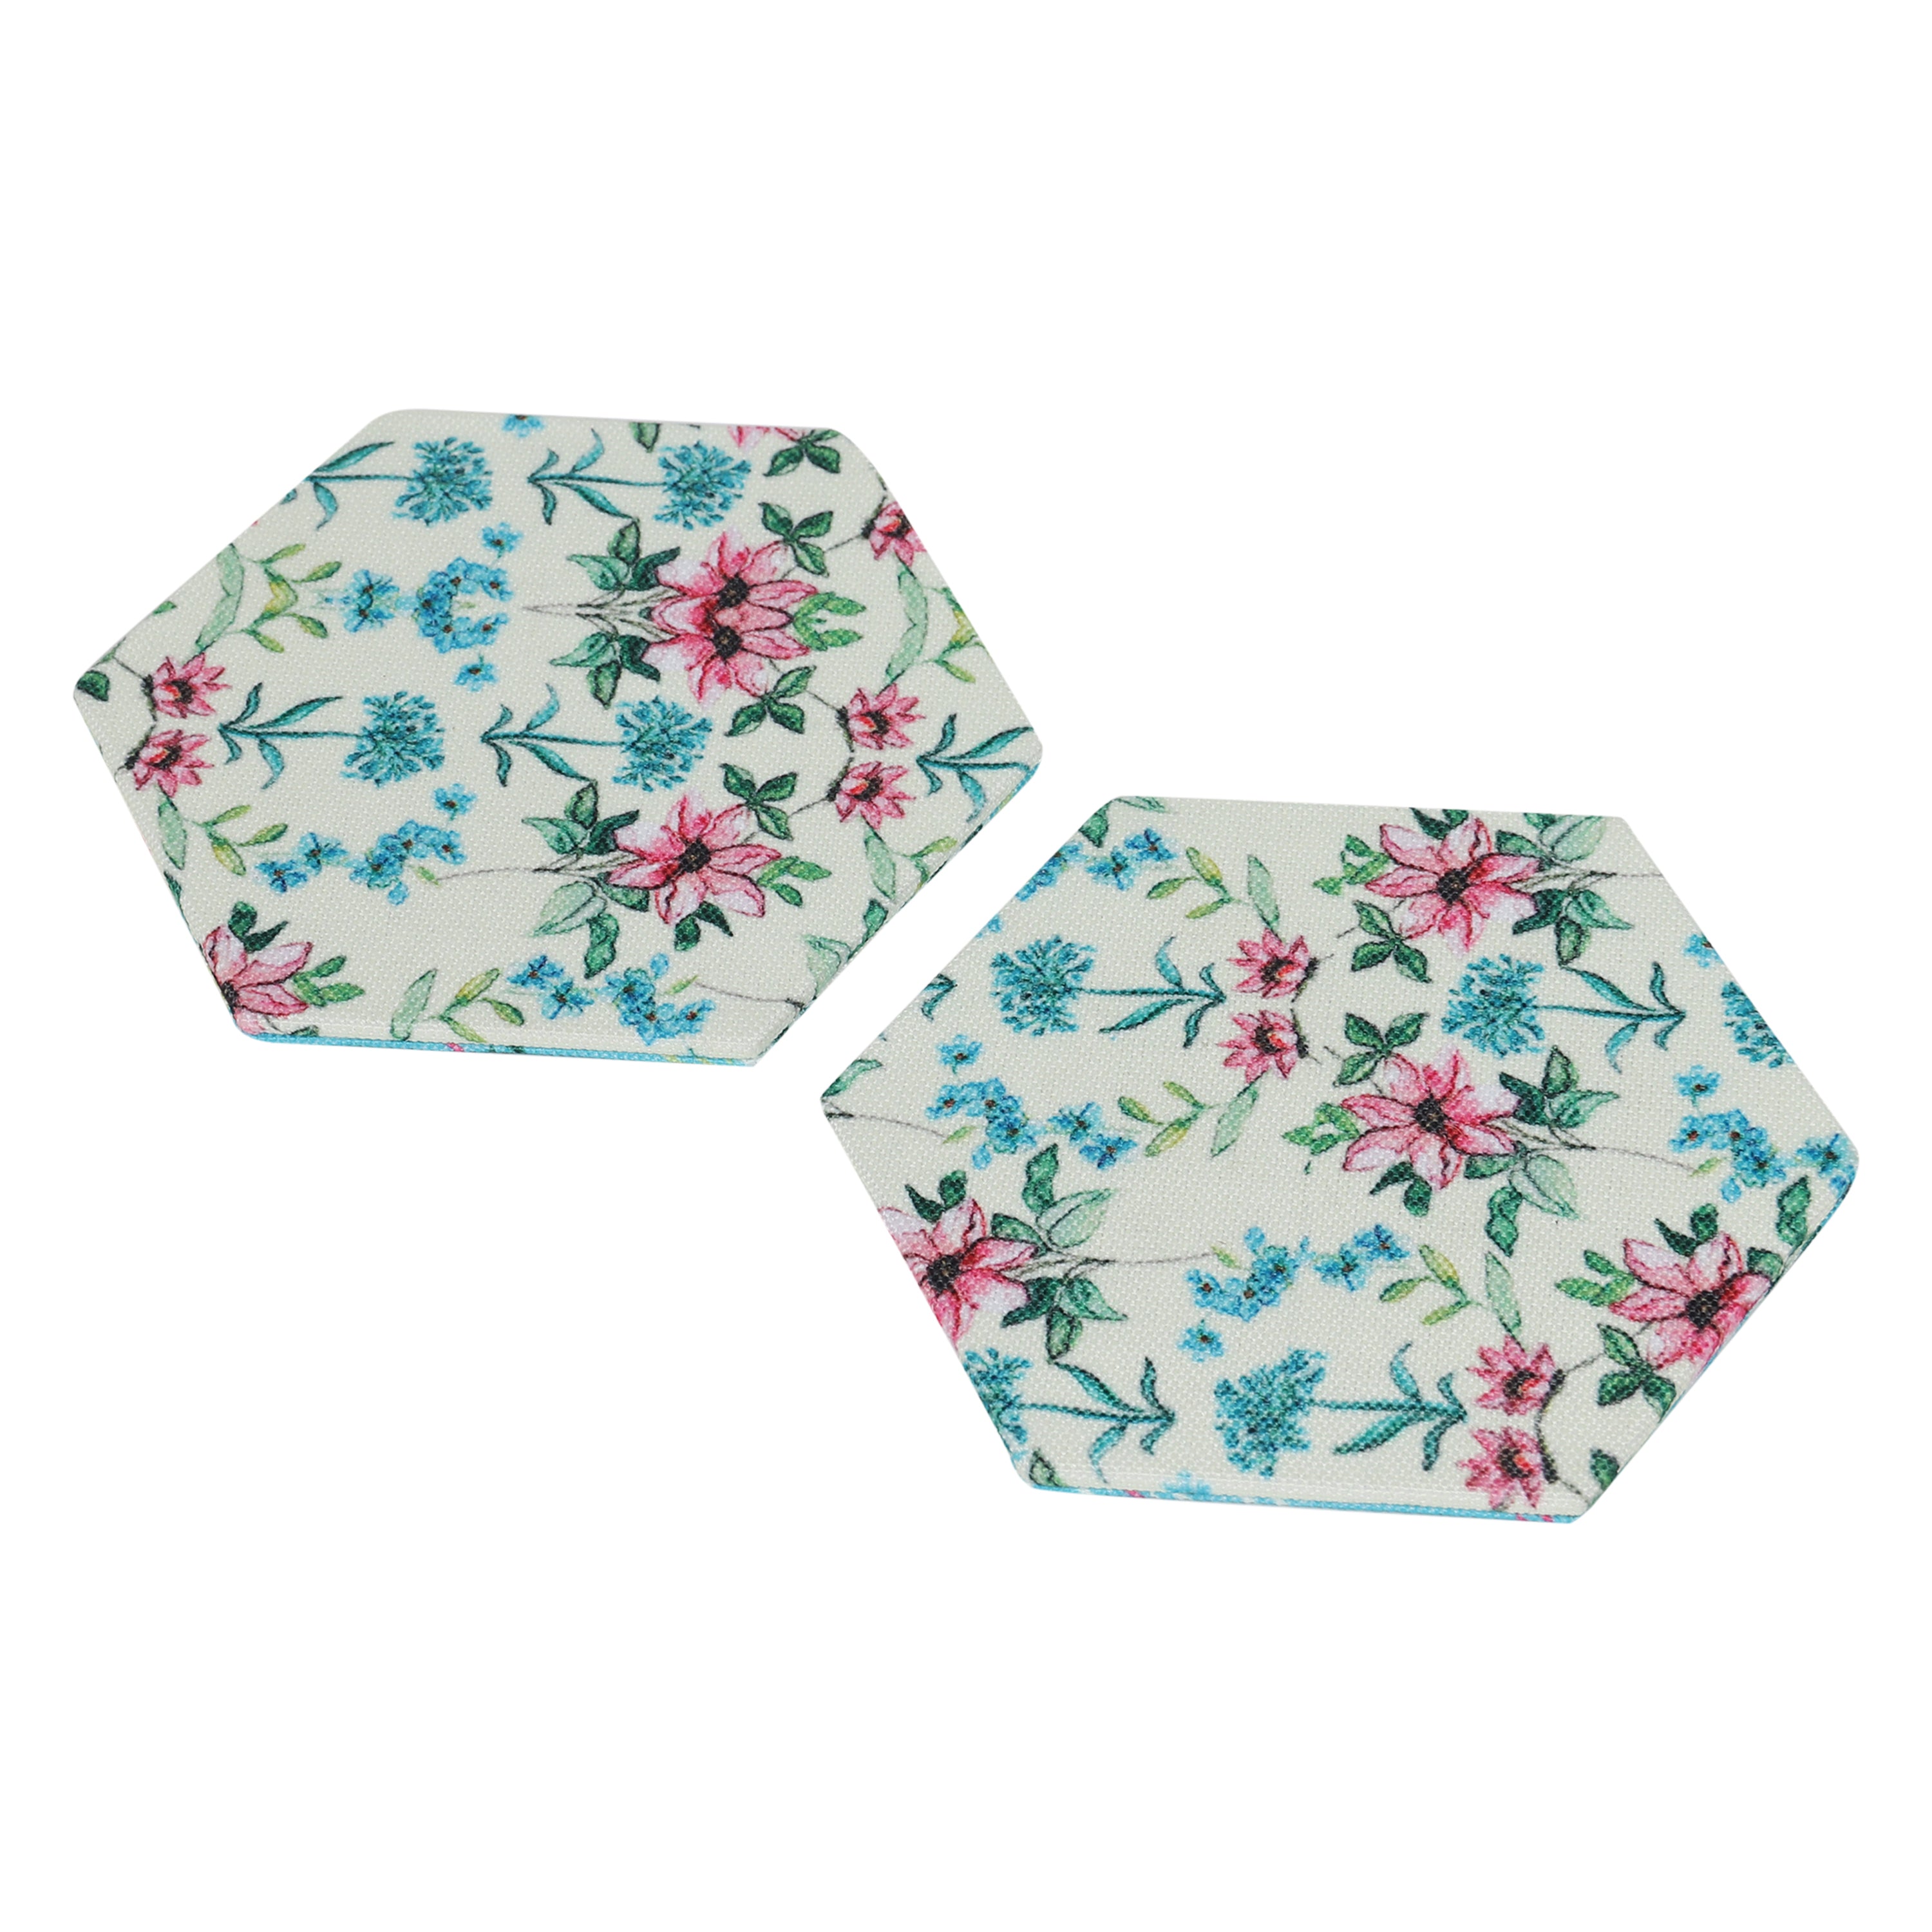 Hexagonal Coasters - Blooming Delights